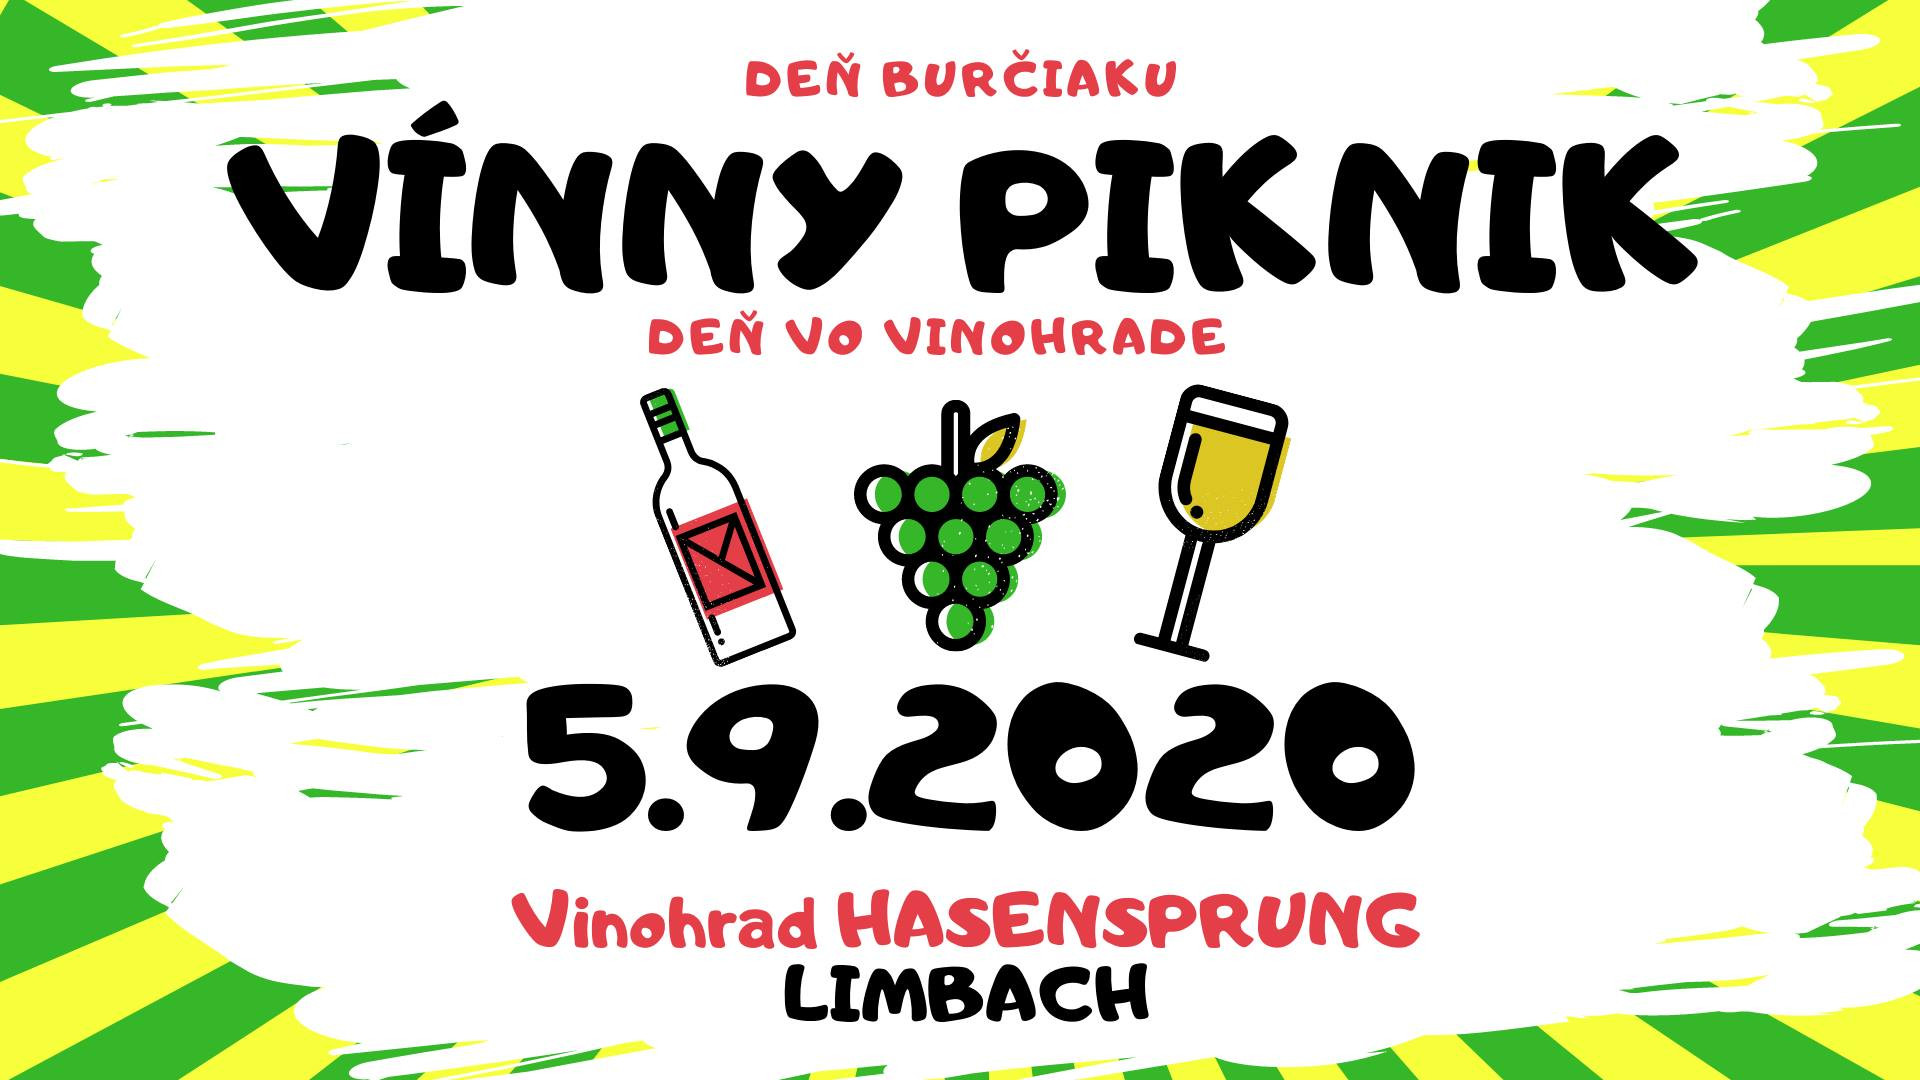 Vínny piknik Limbach